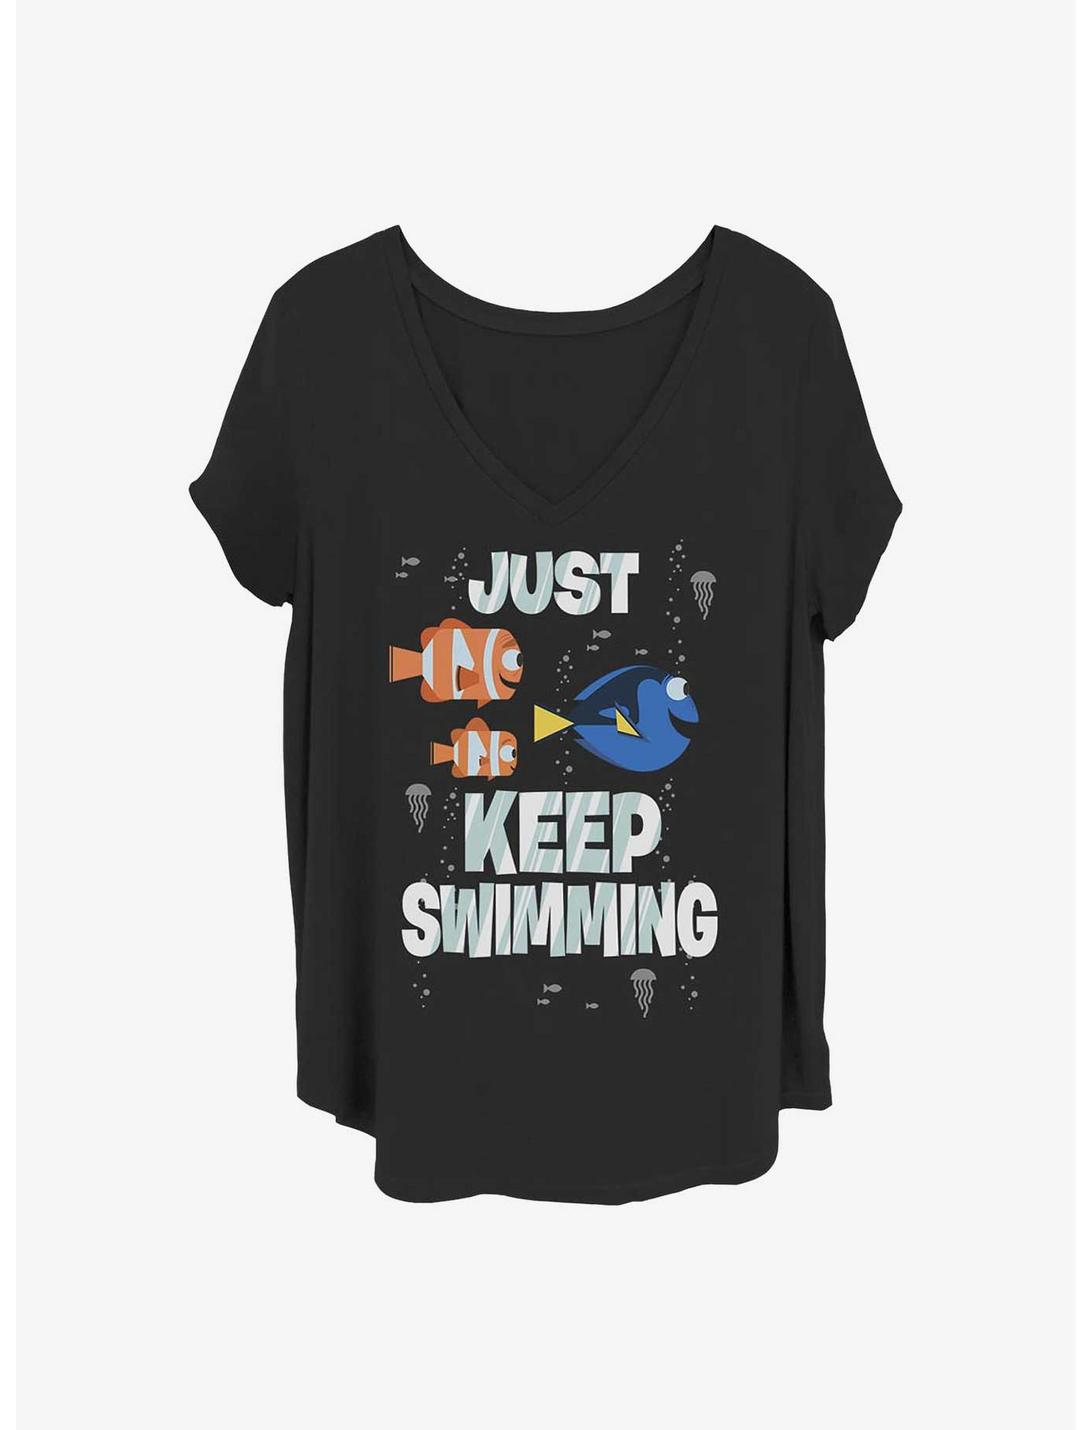 Disney Pixar Finding Nemo Just Swimming Girls T-Shirt Plus Size, BLACK, hi-res